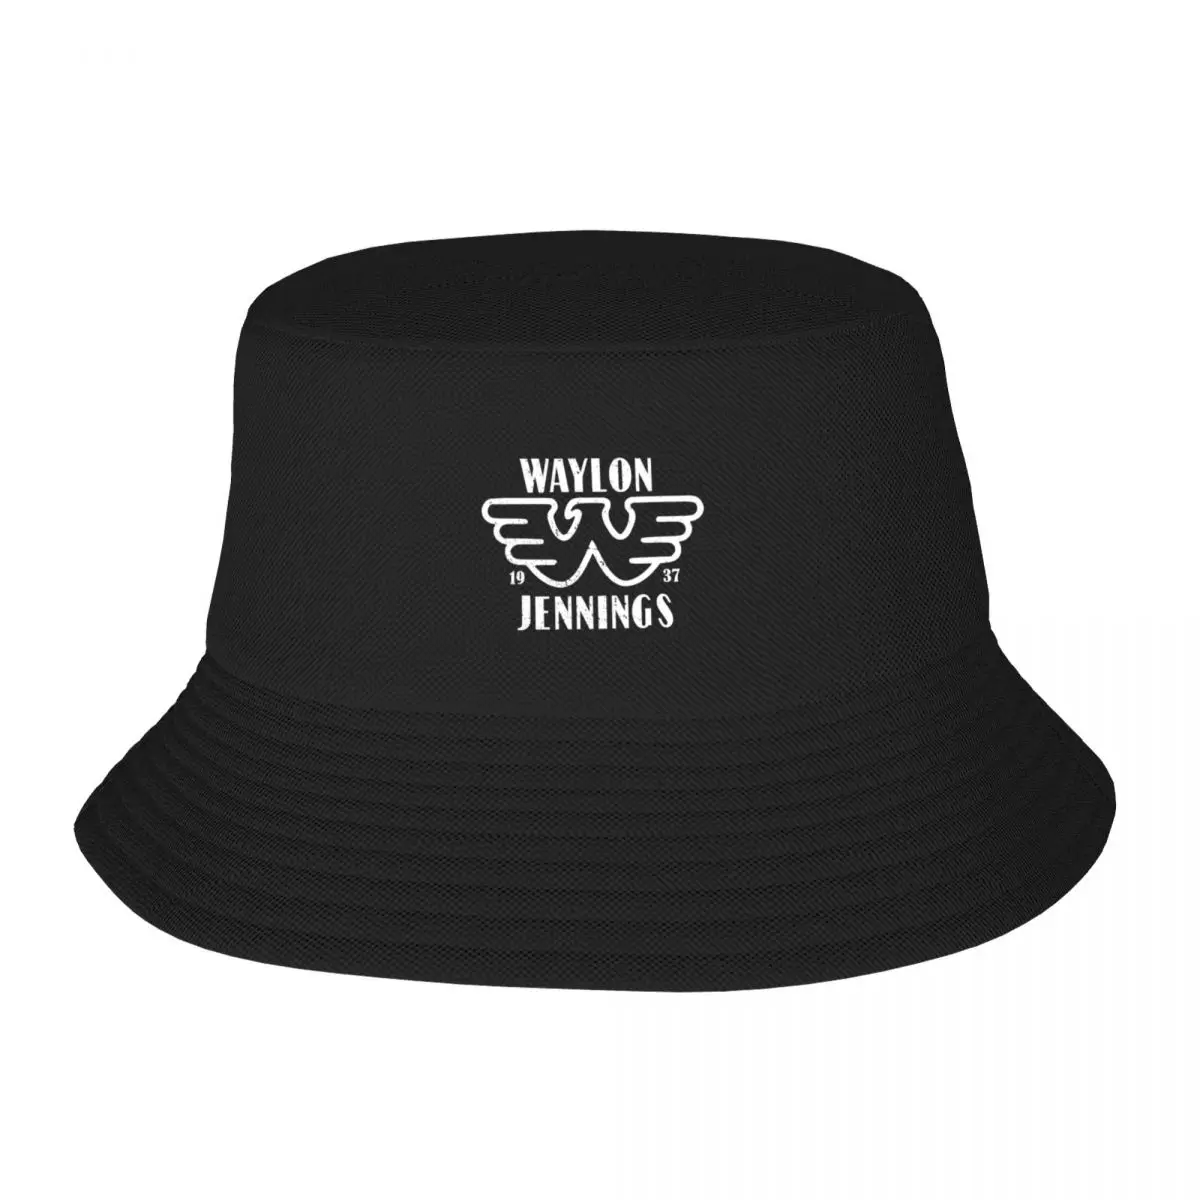 

New Copy of Waylon Jennings Outlaw Bucket Hat Fashion Beach Golf New In Hat Hats For Women Men's